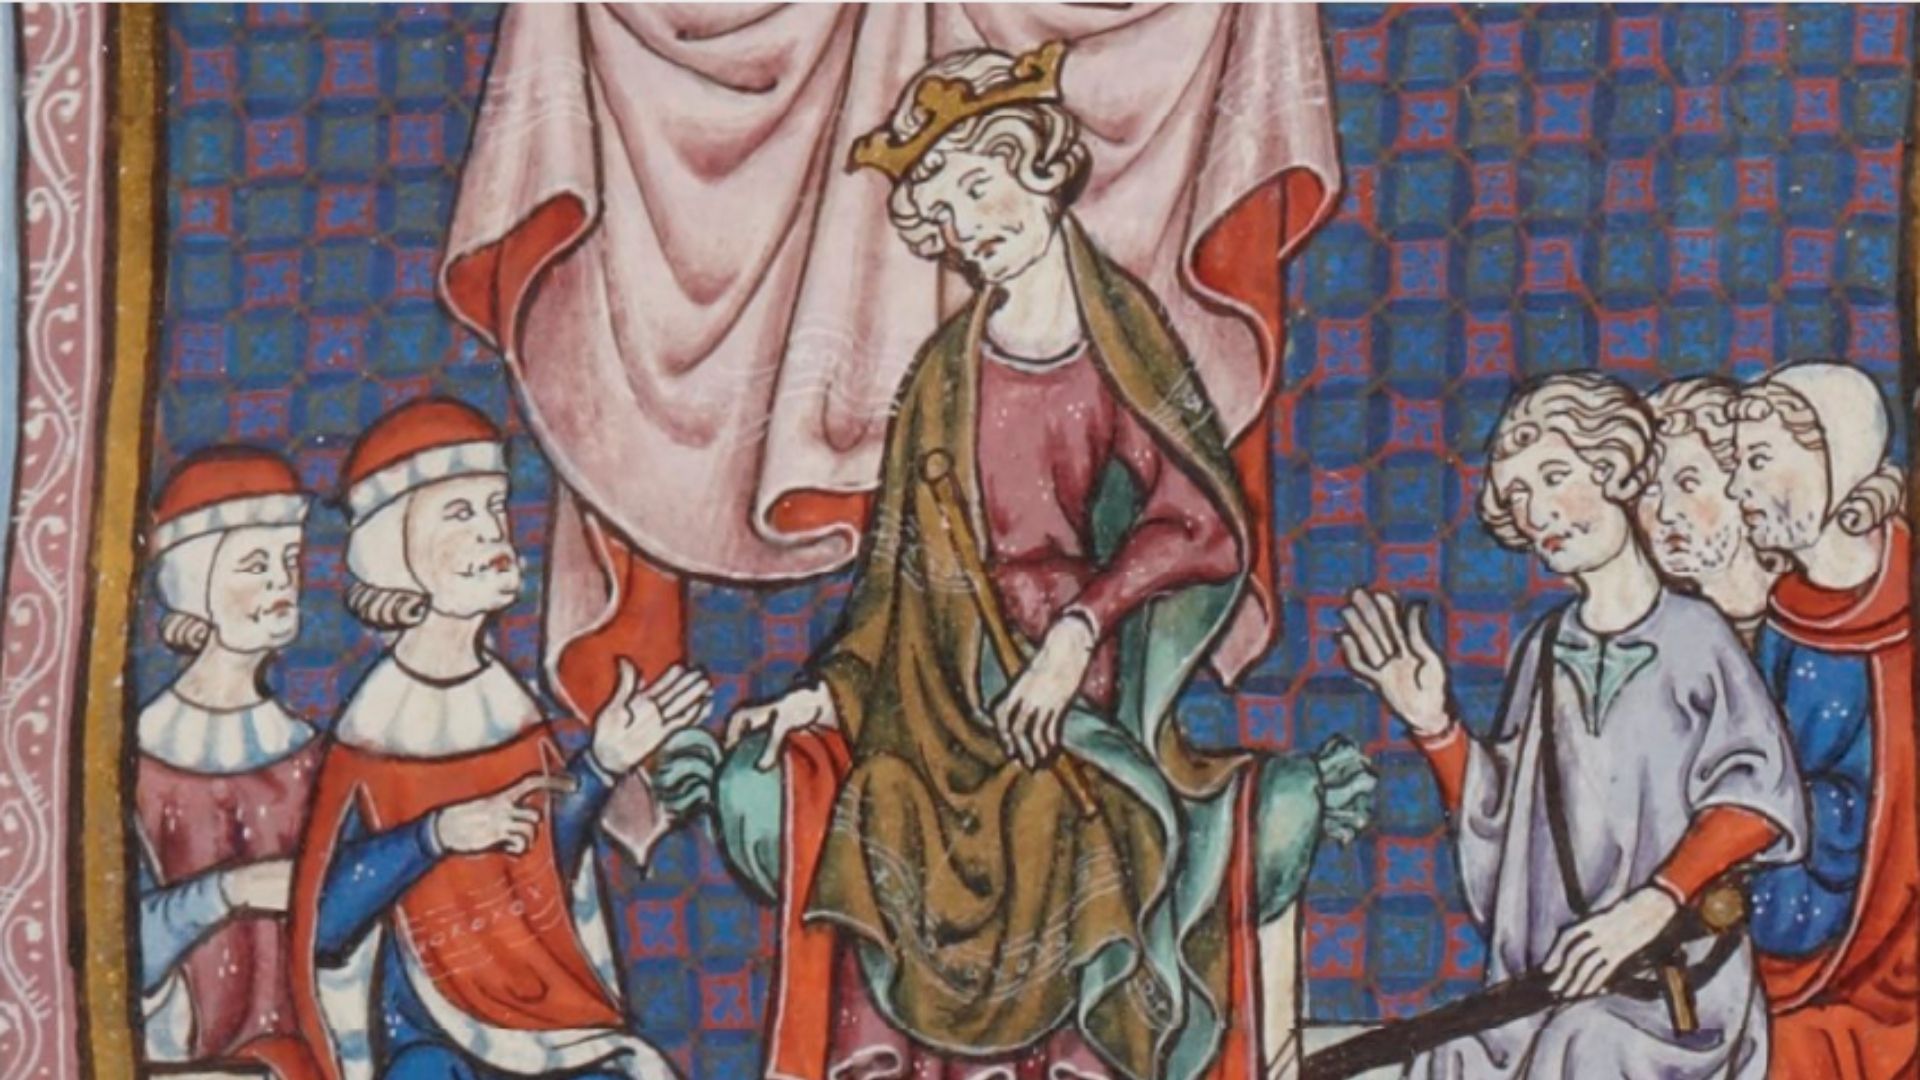 El Rey Jaime II de Aragón presidiendo un consejo de nobles